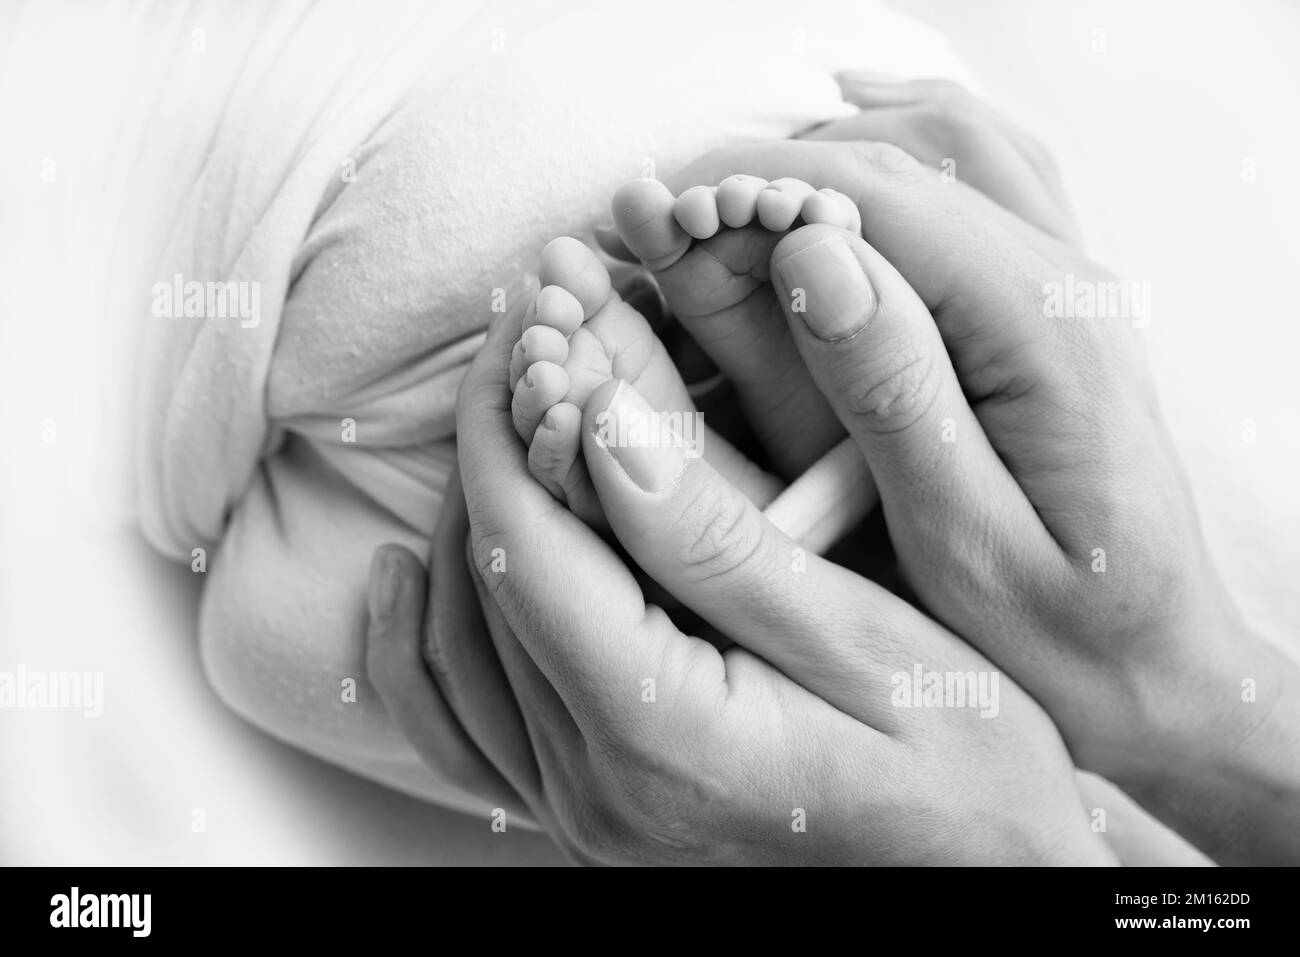 Gambe, dita dei piedi, piedi e talloni di un neonato. Le mani dei genitori tengono le gambe del bambino Foto Stock